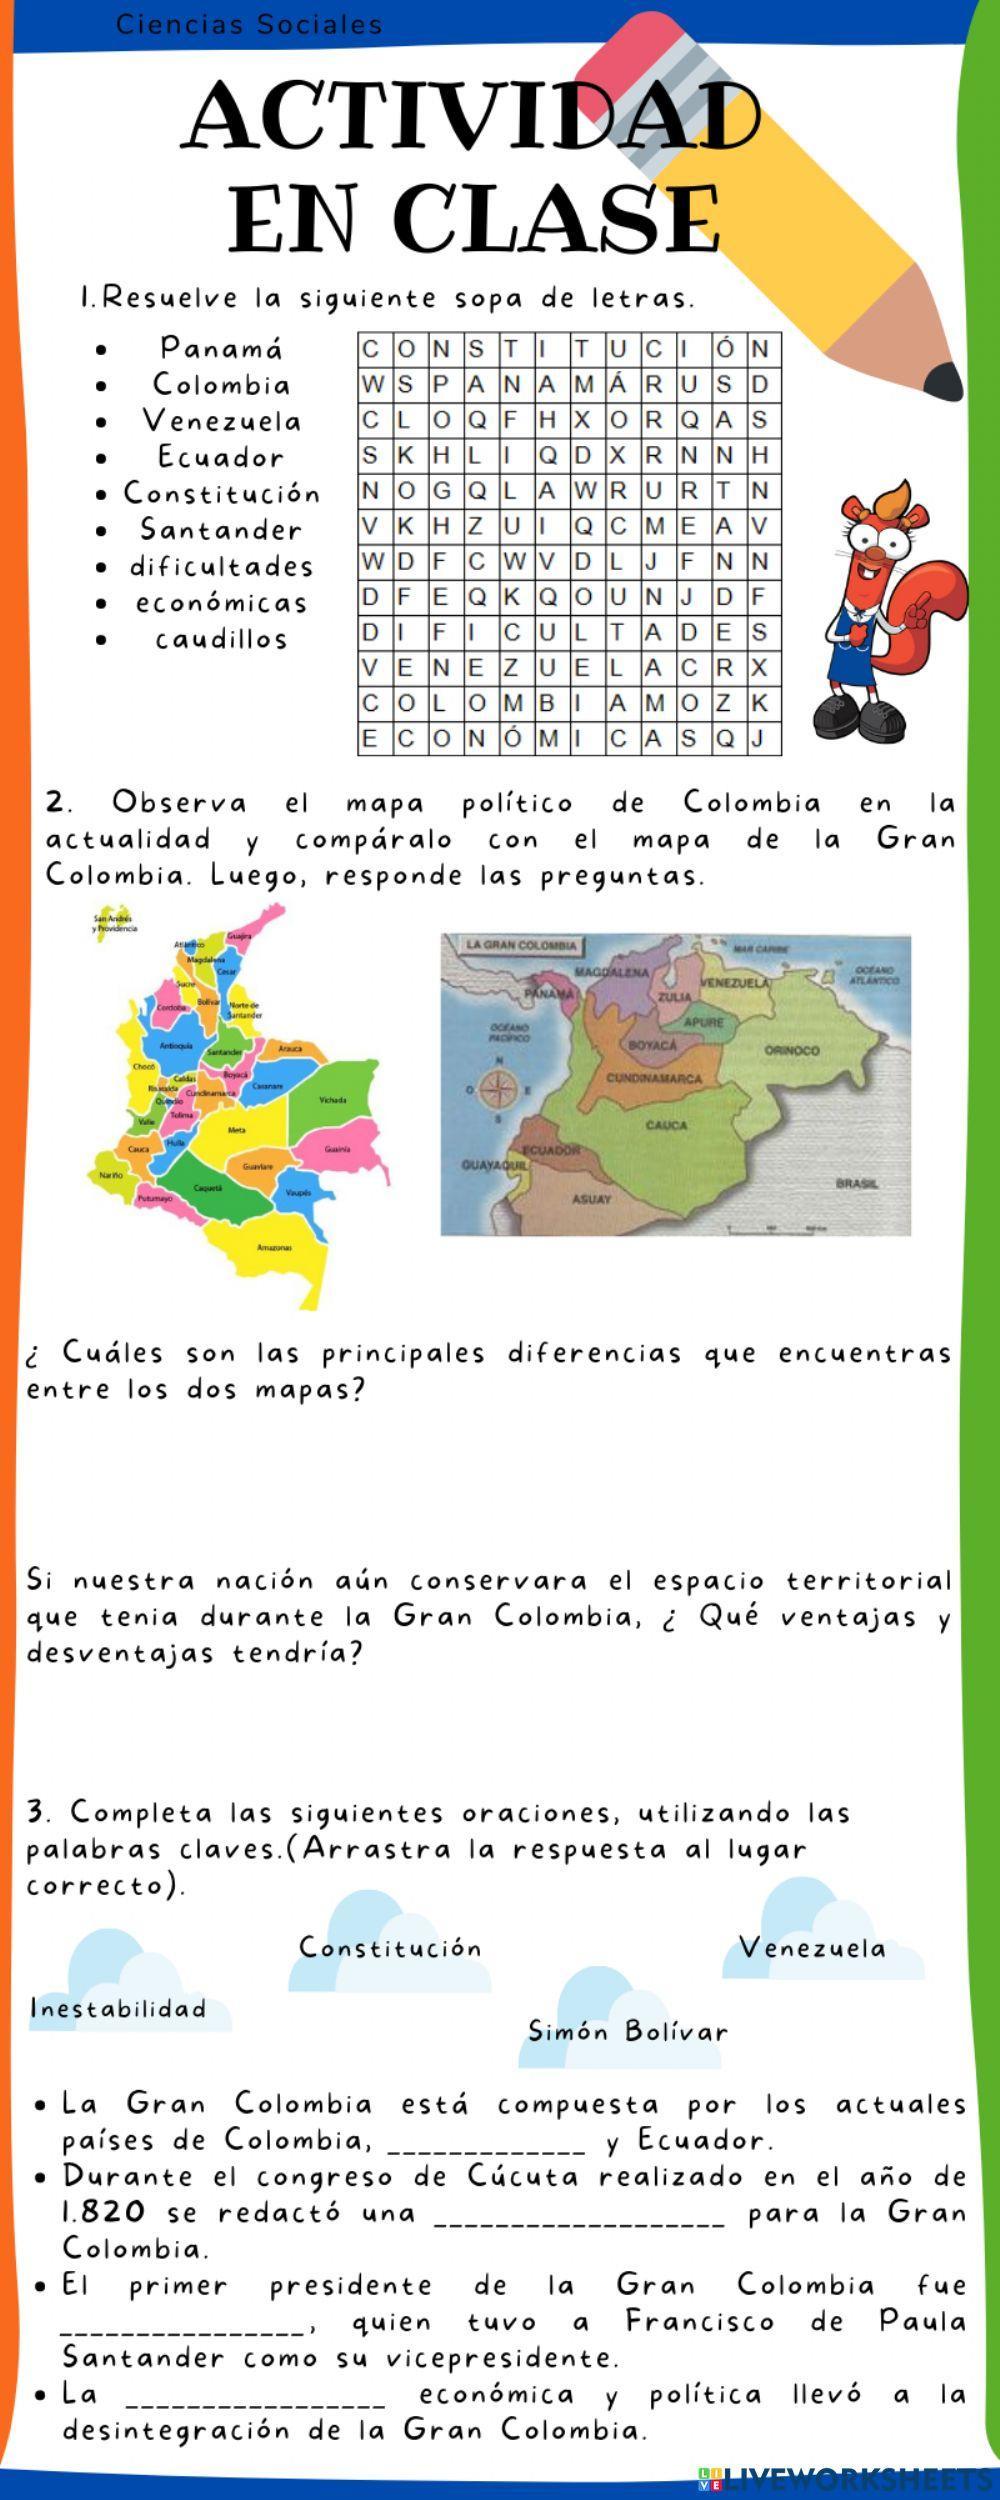 La gran Colombia